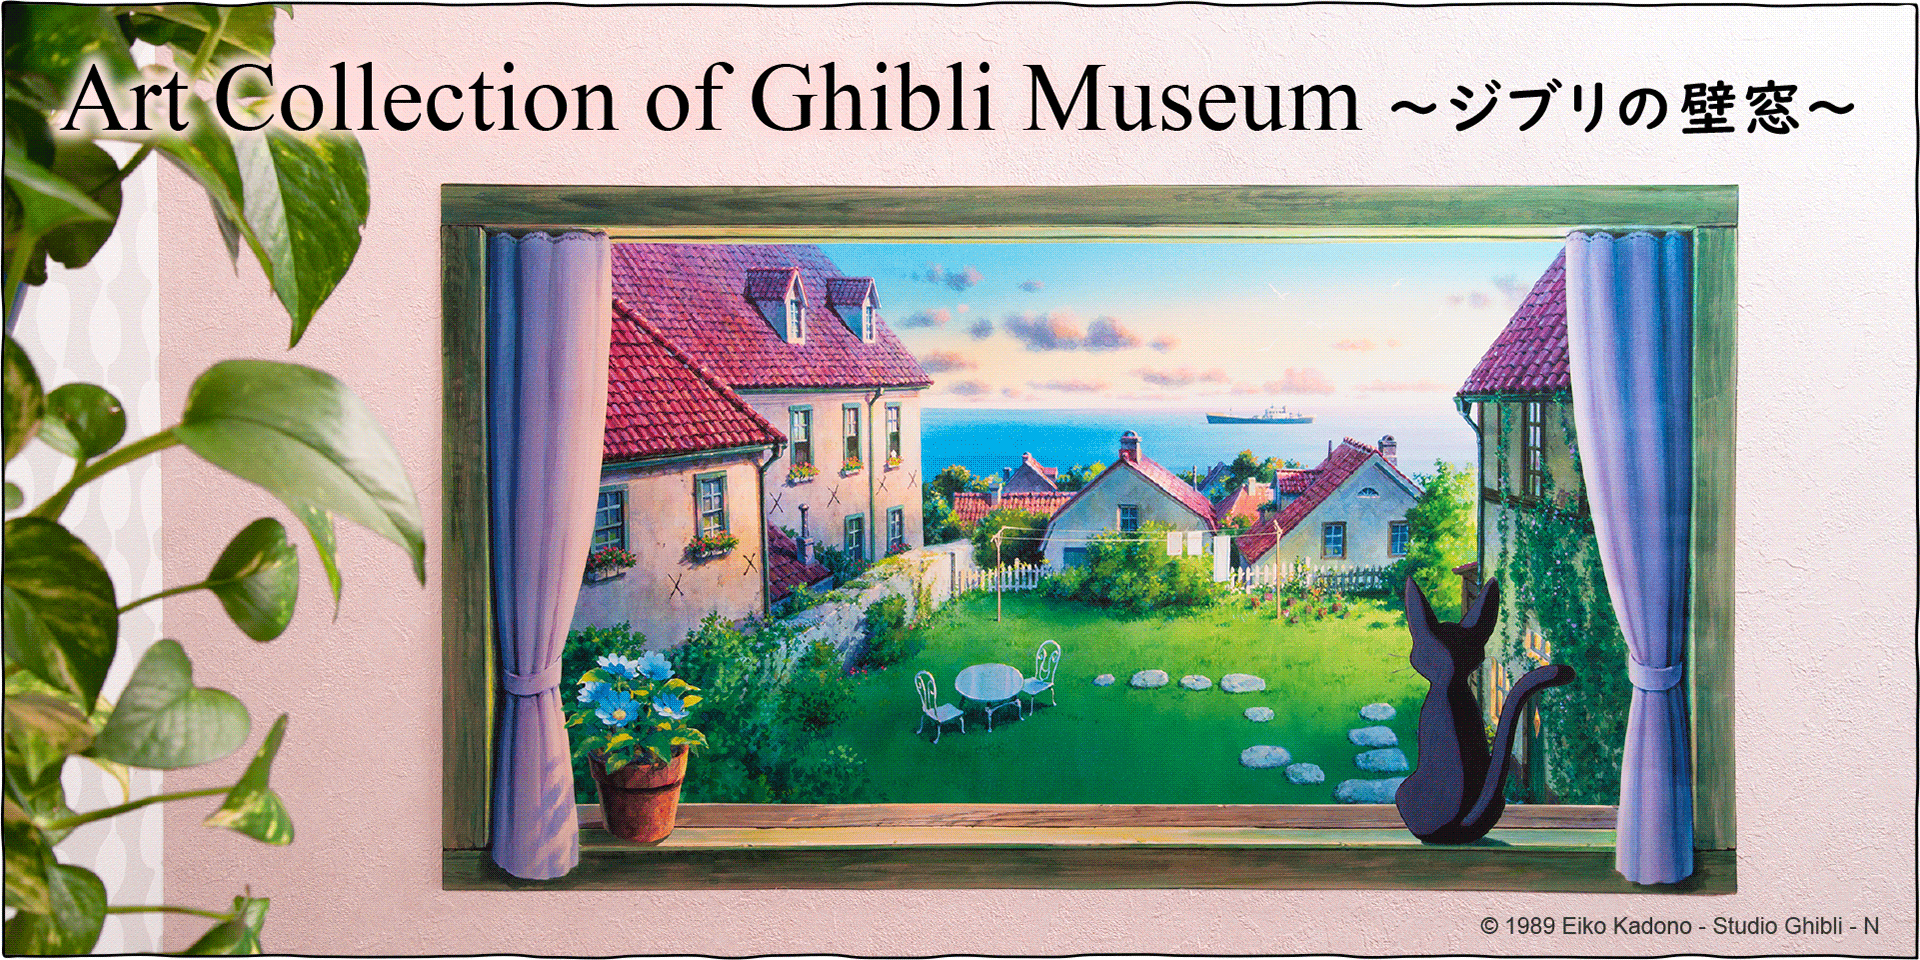 『魔女の宅急便』の美術背景画が、お部屋に飾れる「Window Wall Art」になりました。